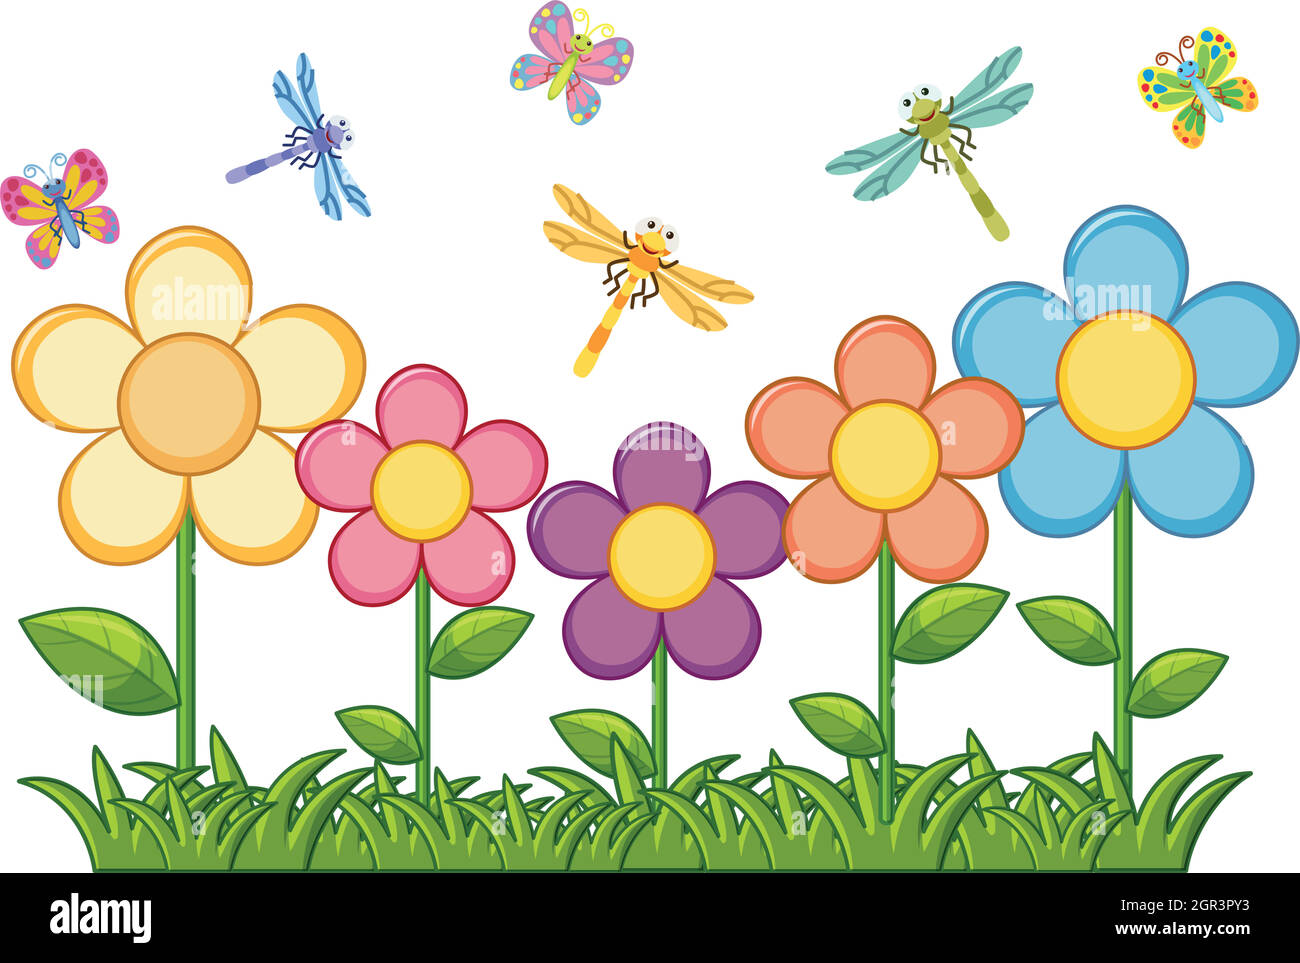 Mariposas y libélulas en el jardín de flores Ilustración del Vector